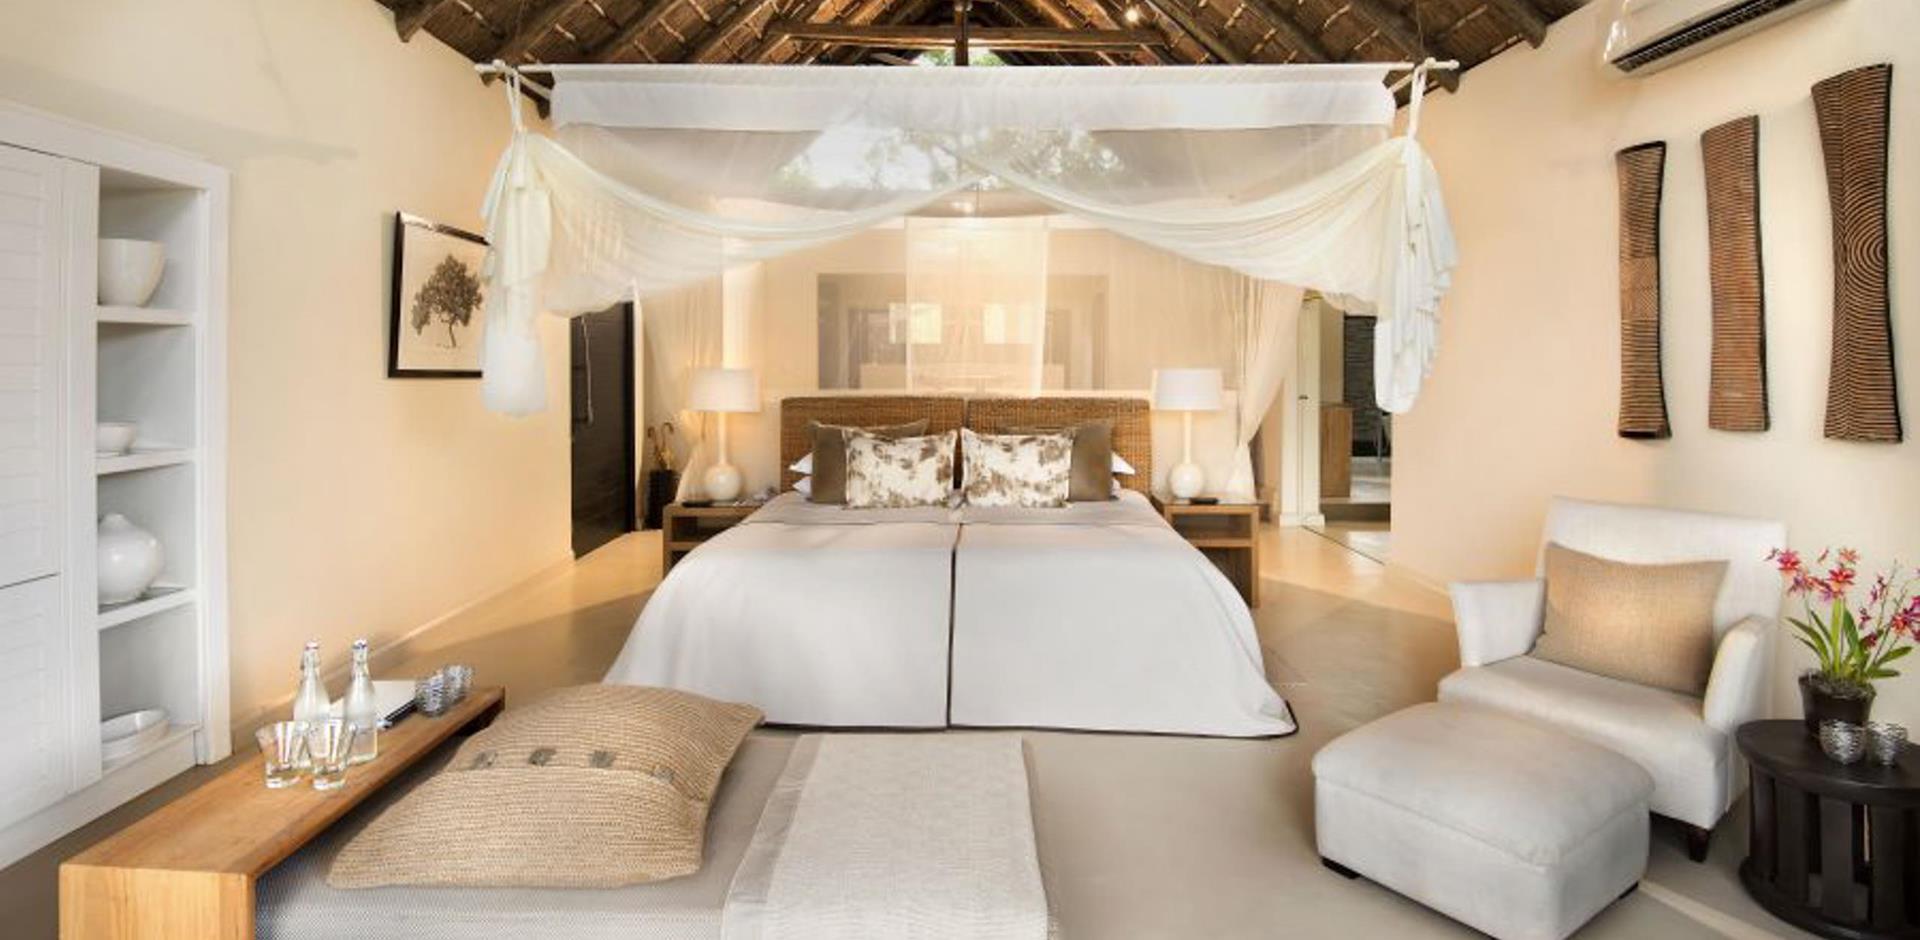 Bedroom, Lion Sands River Lodge, South Africa, A&K